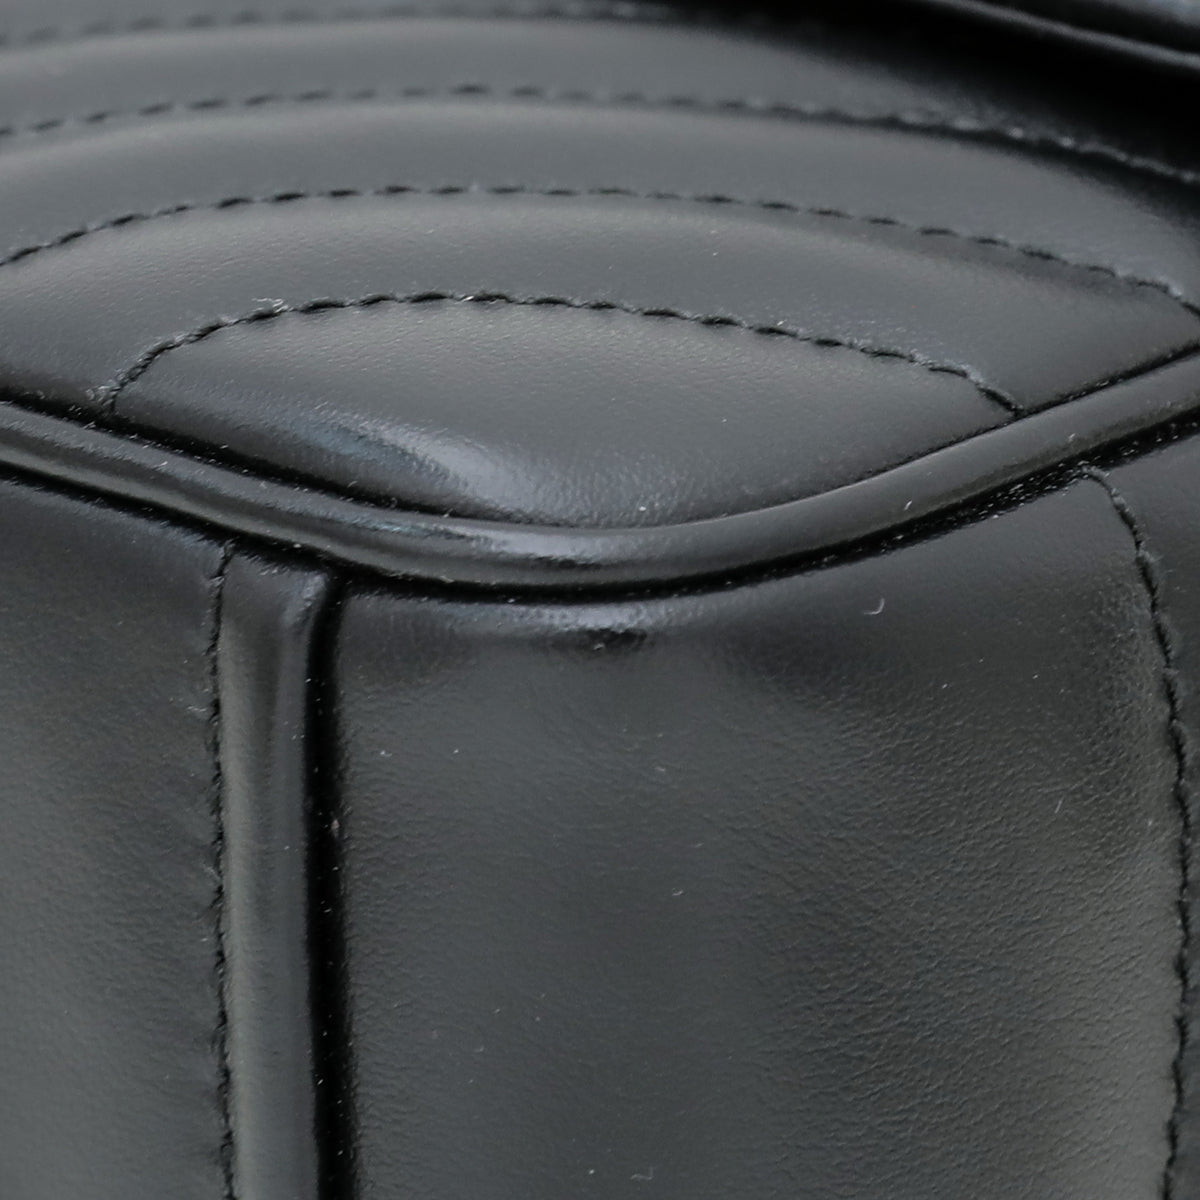 Prada Black Diagramme Flap Bag